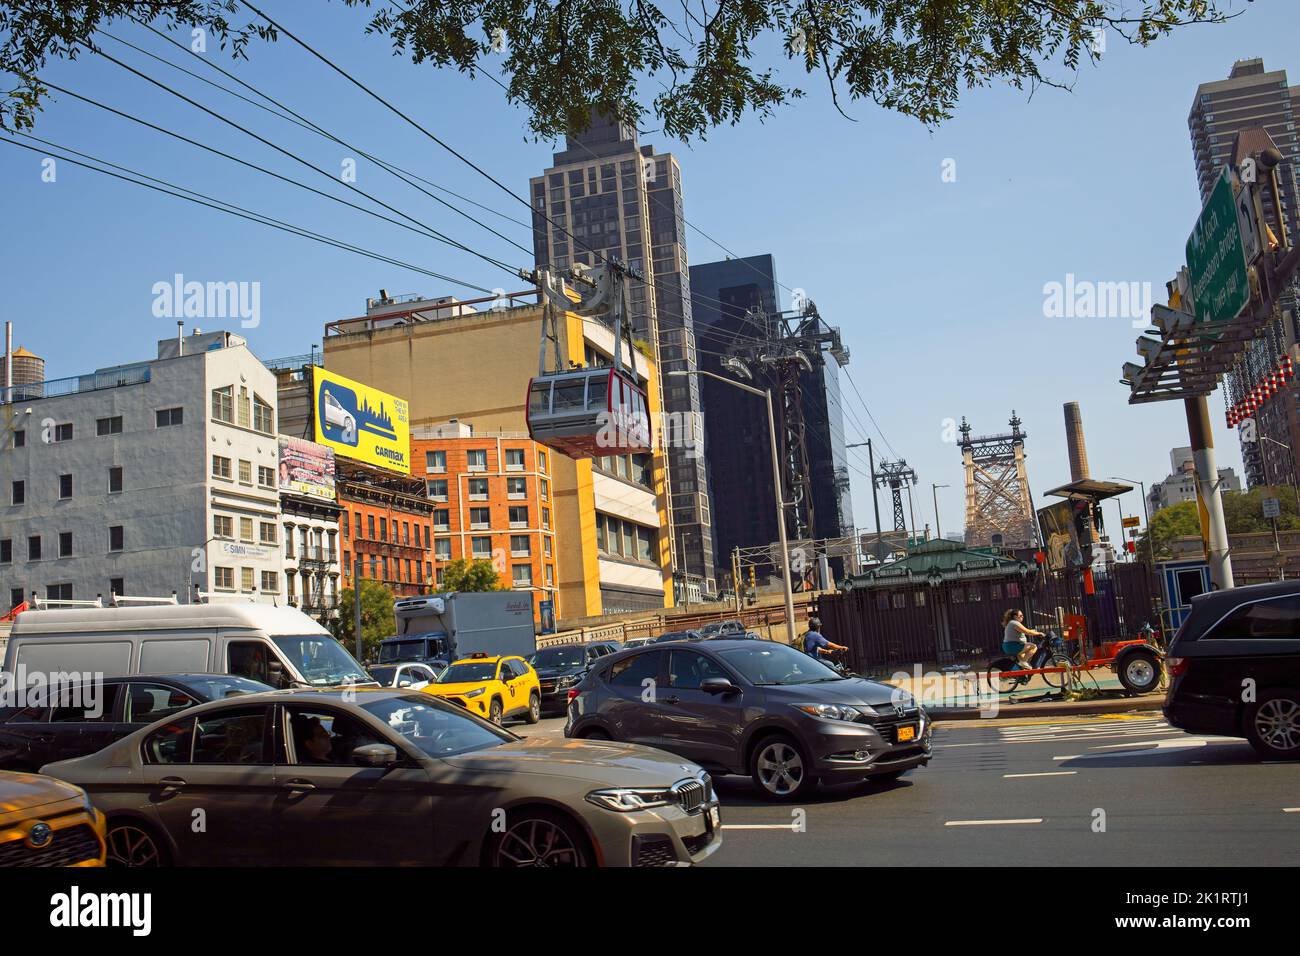 New York, NY, USA - 20 septembre 2022 : le tramway de Roosevelt Island approche du terminal de Manhattan par un beau jour d'automne Banque D'Images